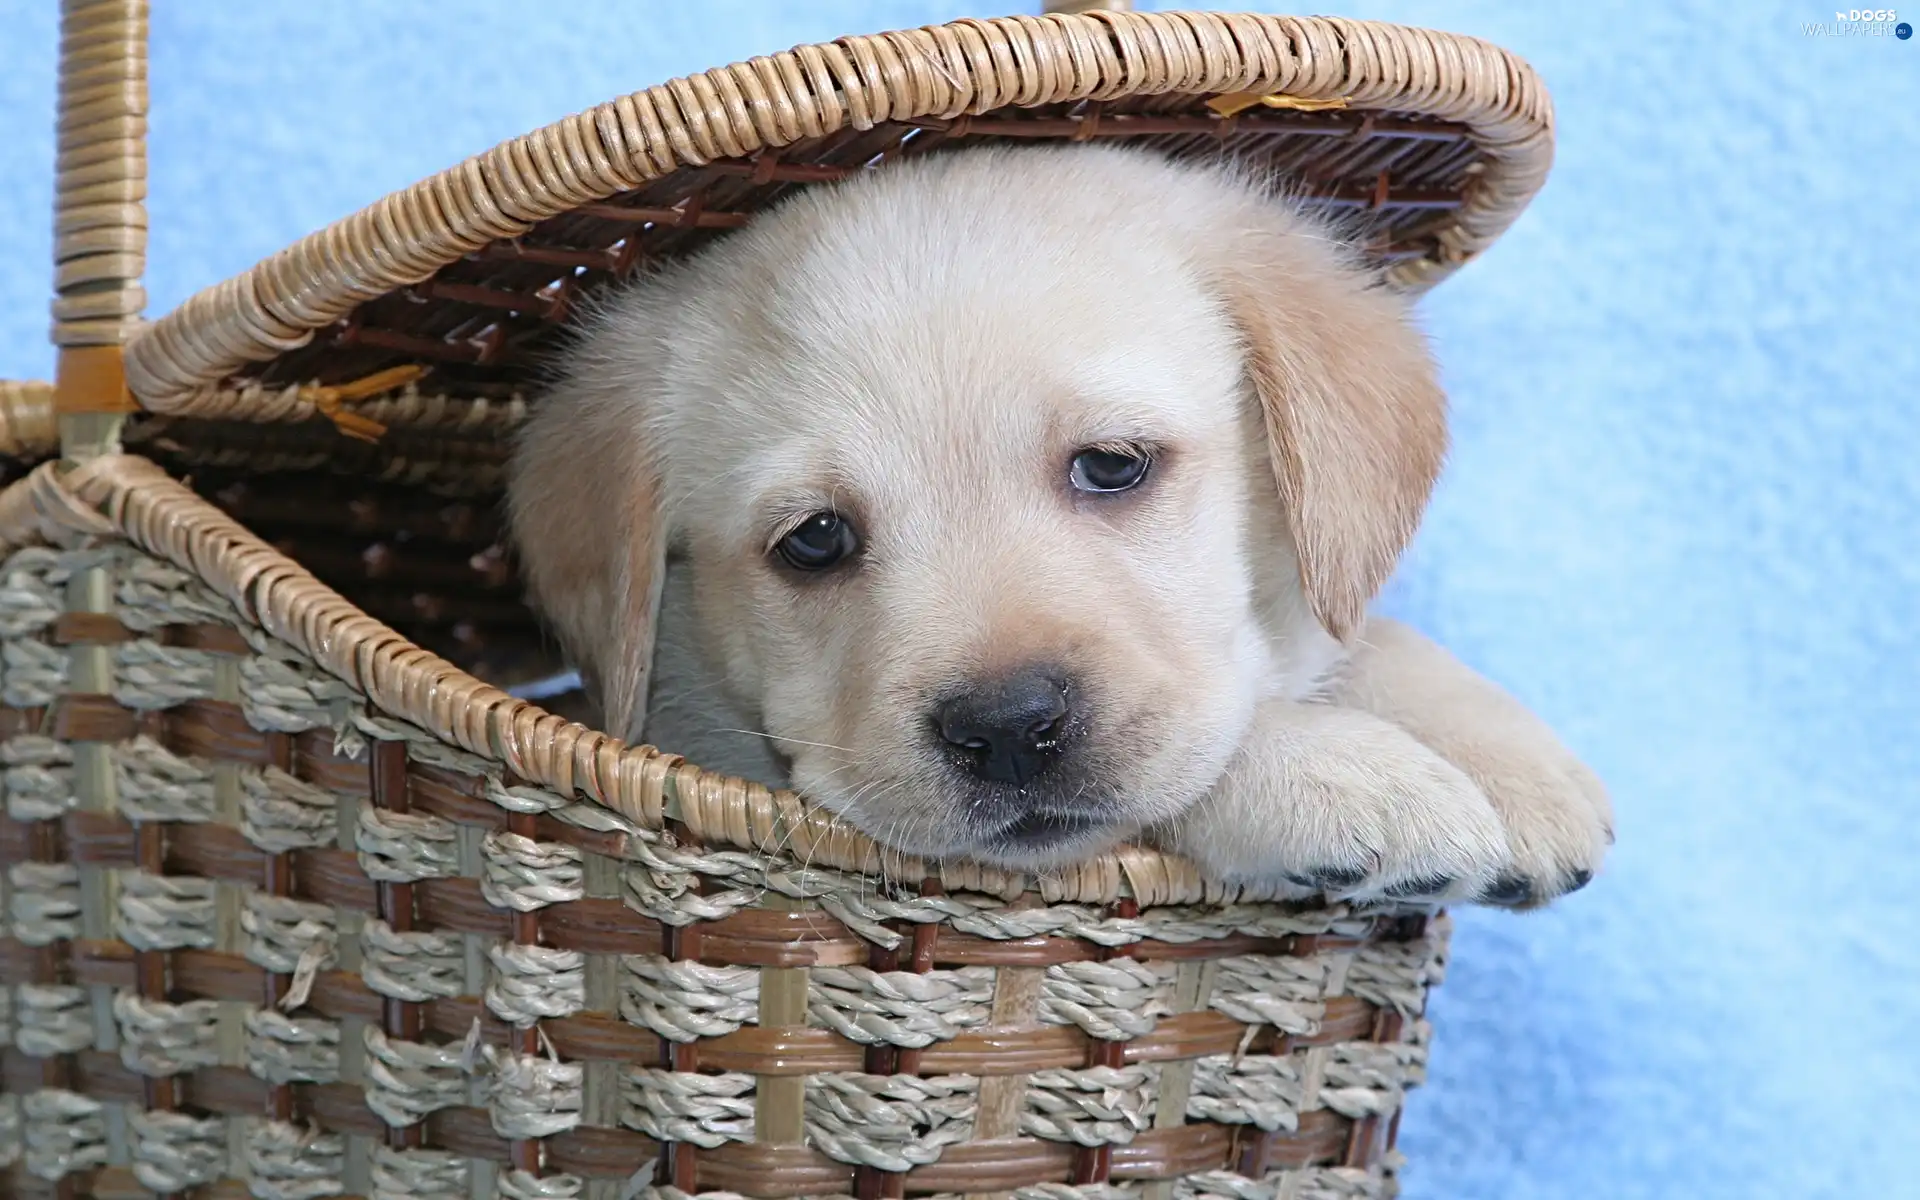 basket, Puppy